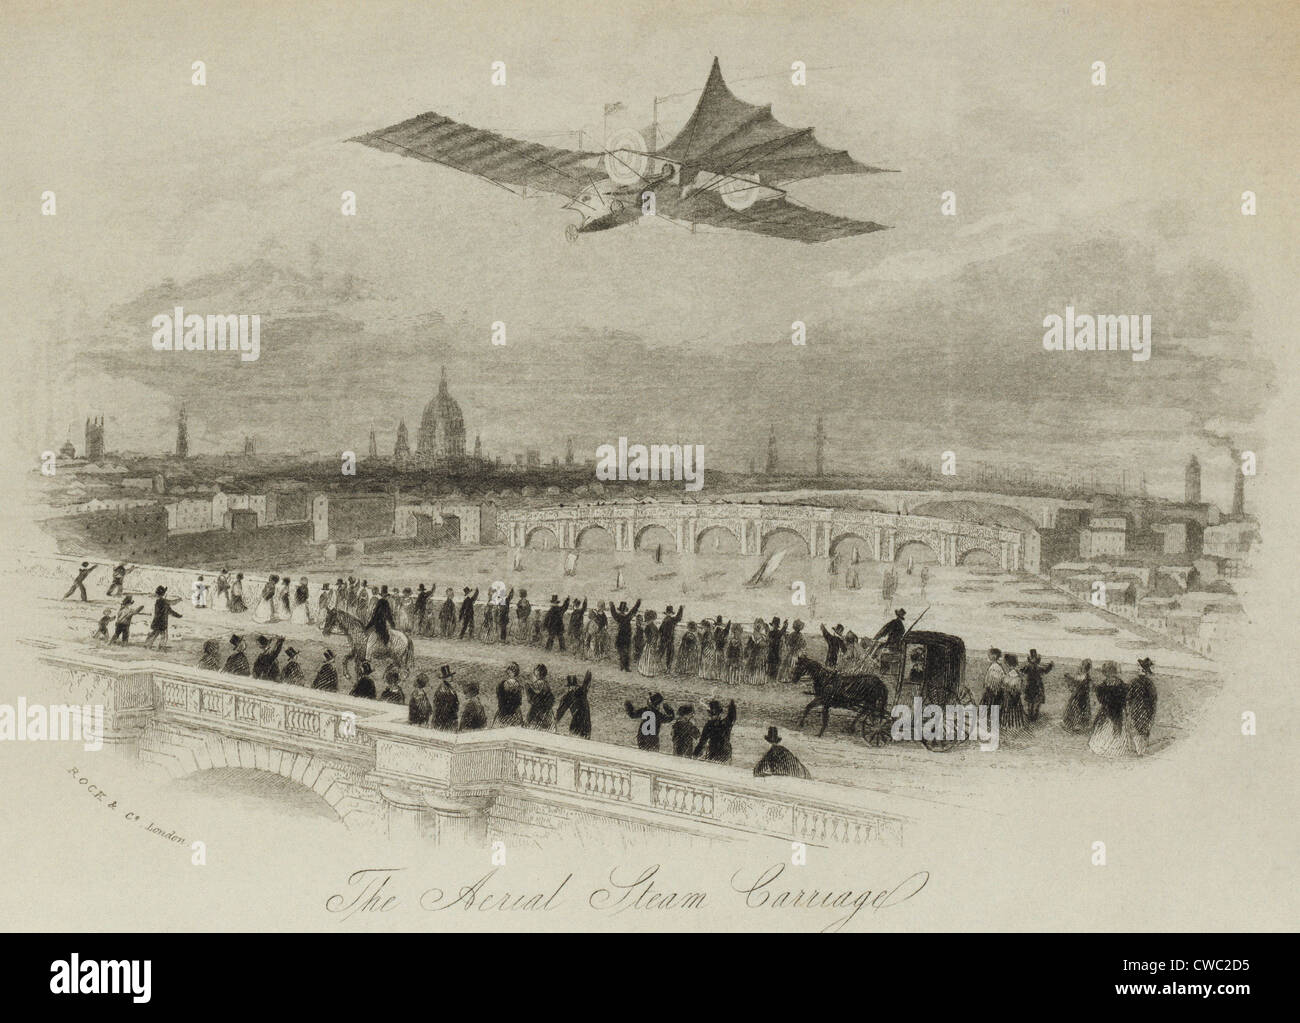 La voiture à vapeur aérienne proposée par l'inventeur britannique William Samuel Henson dans un imaginaire vol au dessus de la rivière Thames Banque D'Images